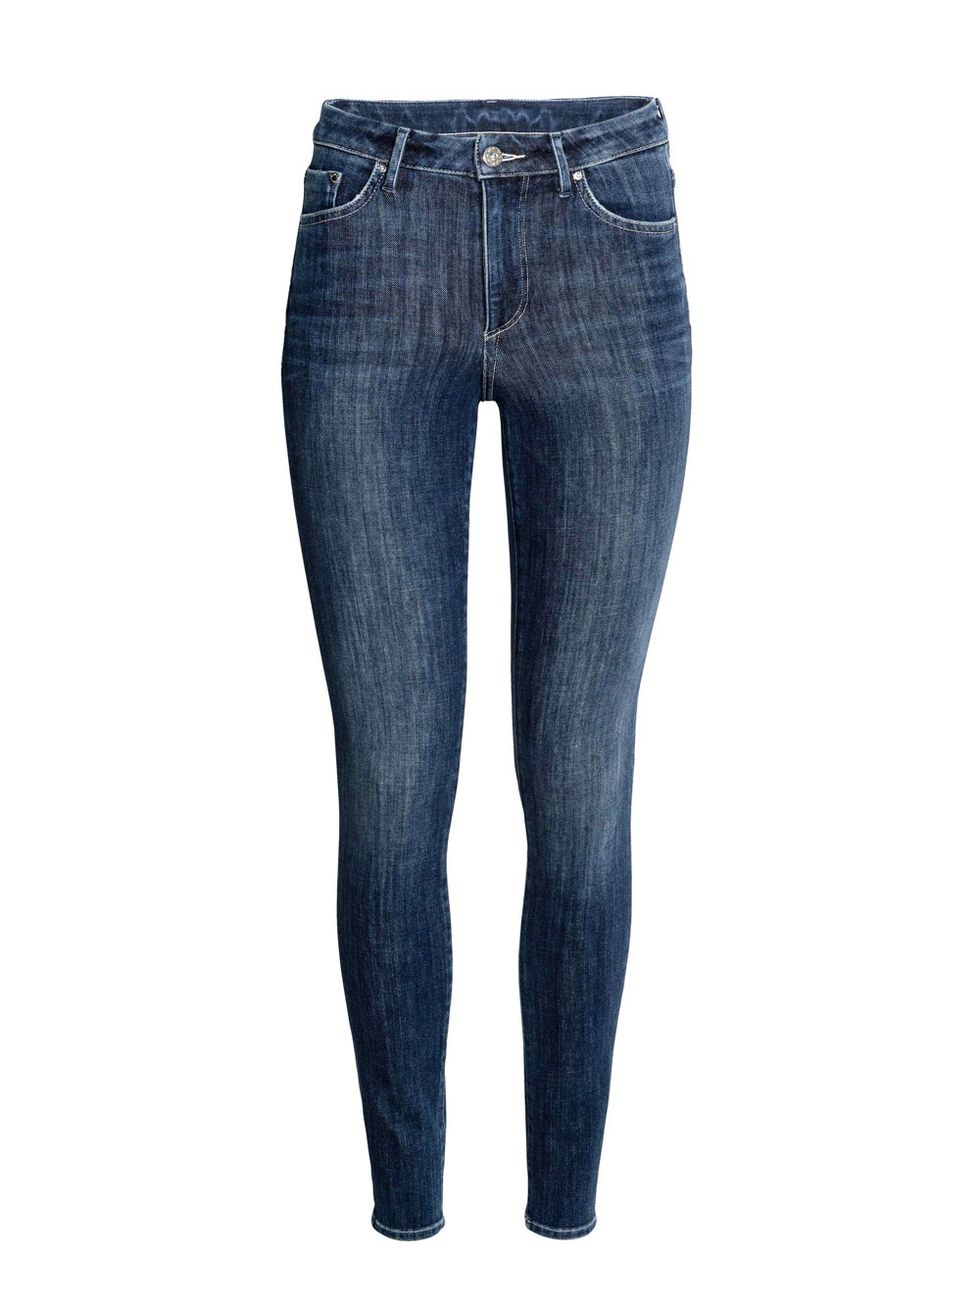 Denim, Jeans, Clothing, Blue, Pocket, Textile, Trousers, Waist, Leg, Electric blue, 